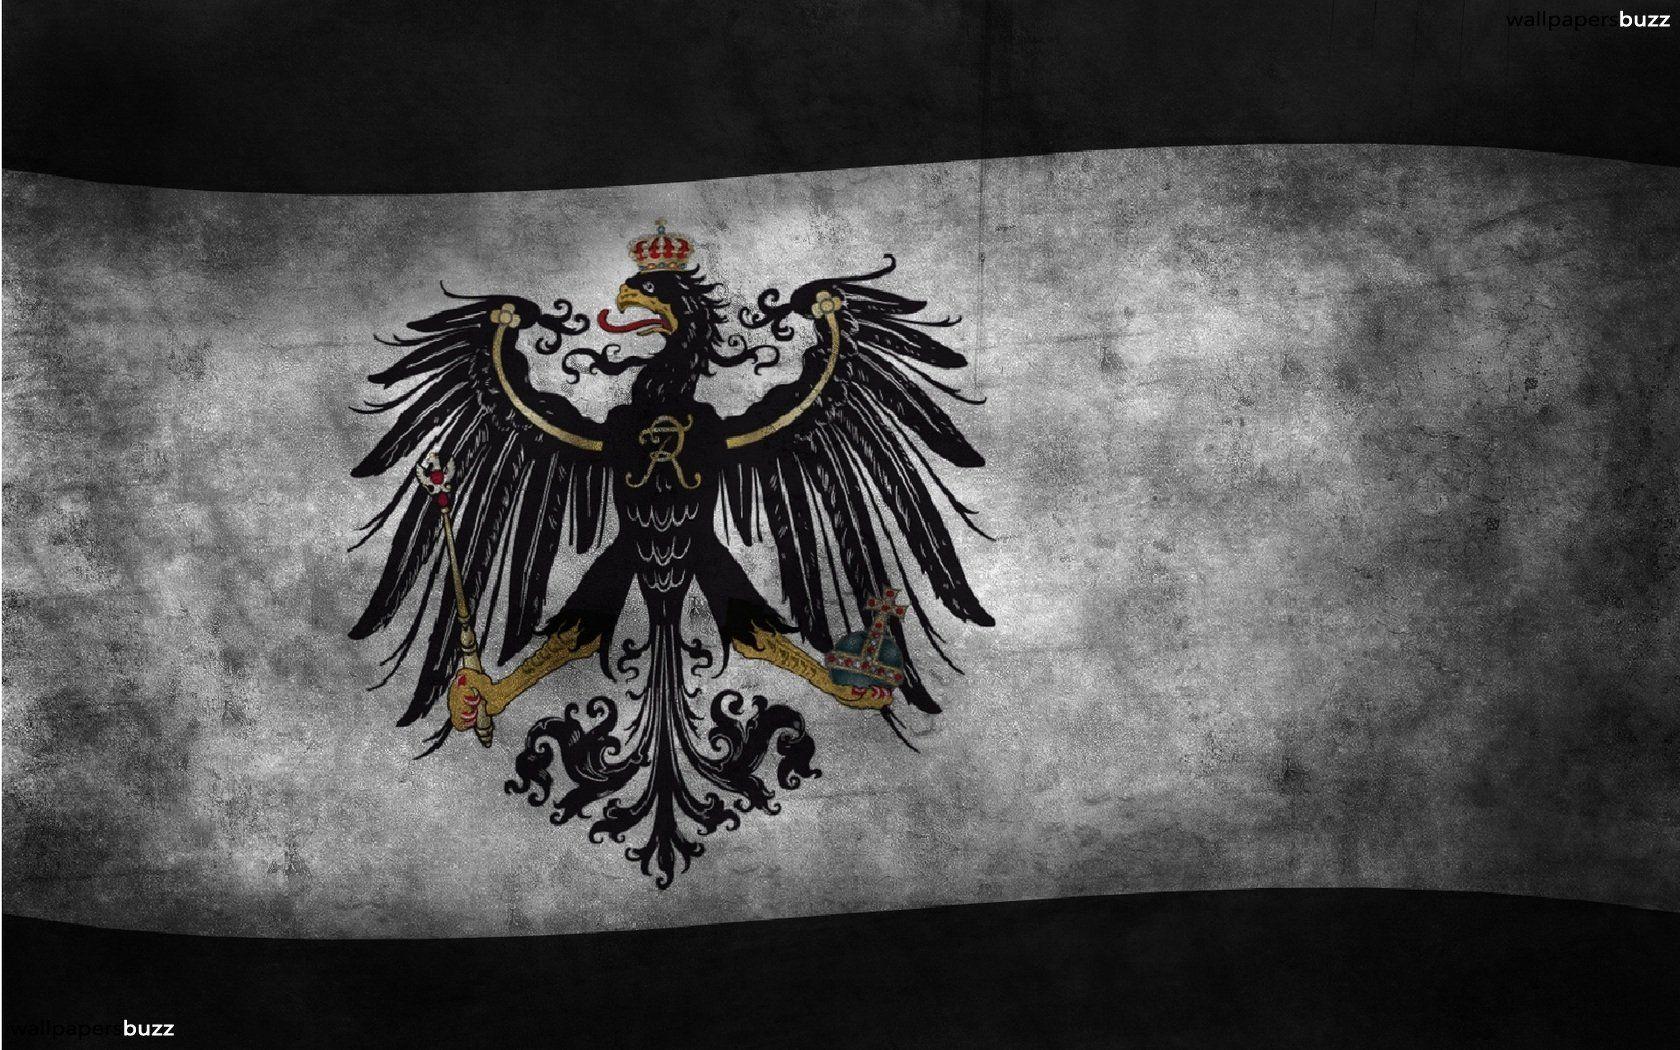 german empire war flag wallpaper